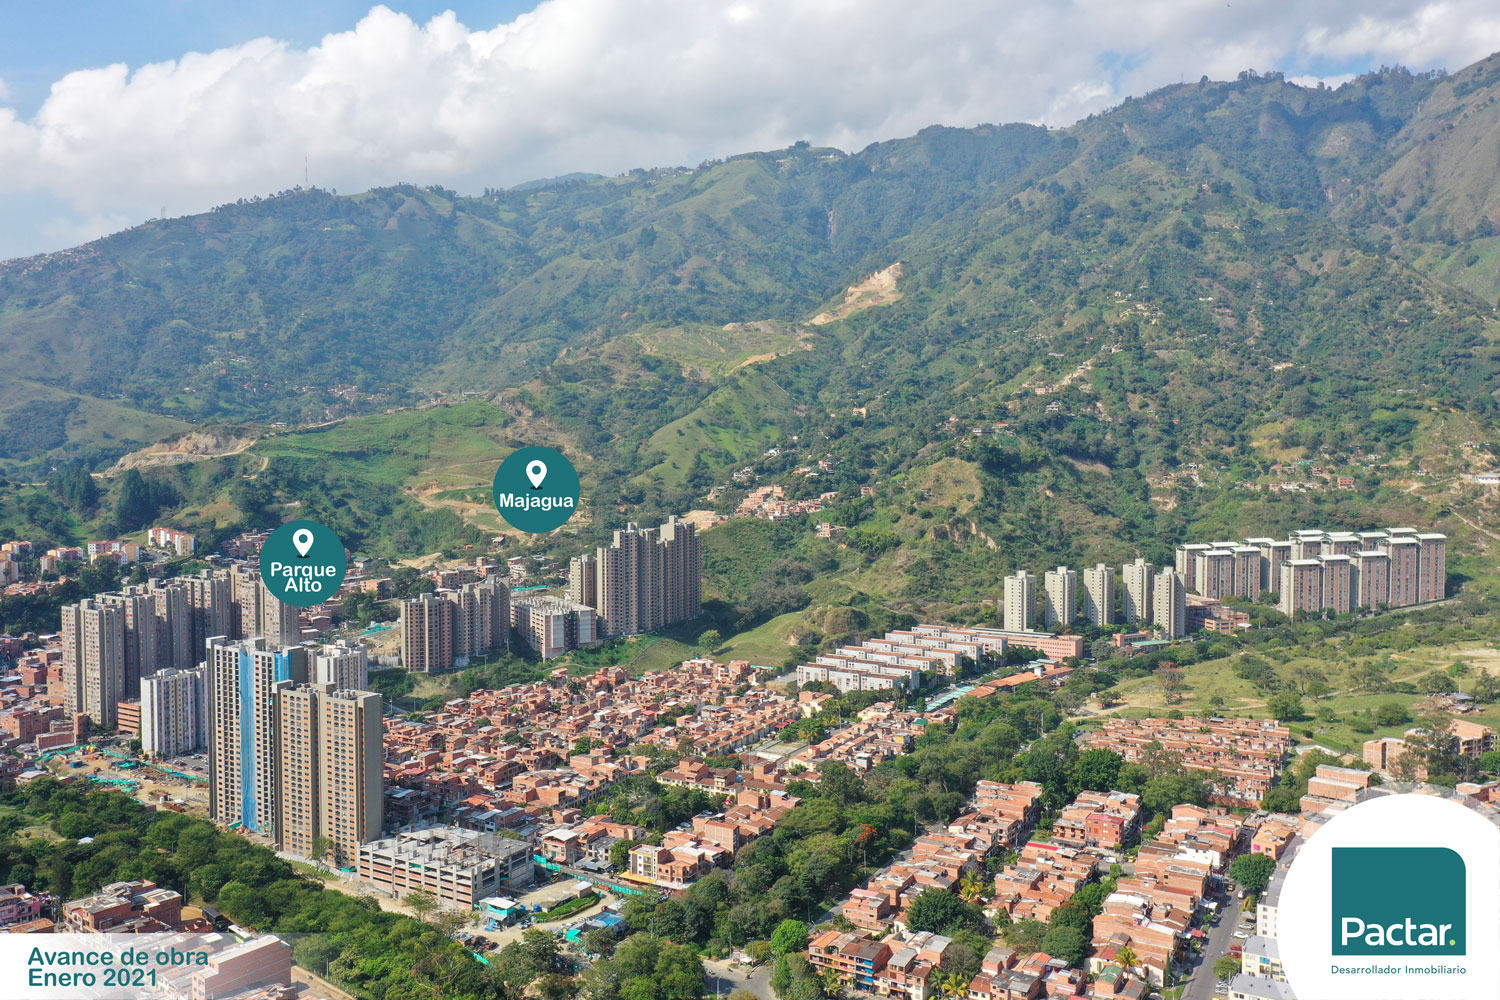 Avance de obra - Venta de Apartamentos y Proyectos de Vivienda en Bello - Antioquia